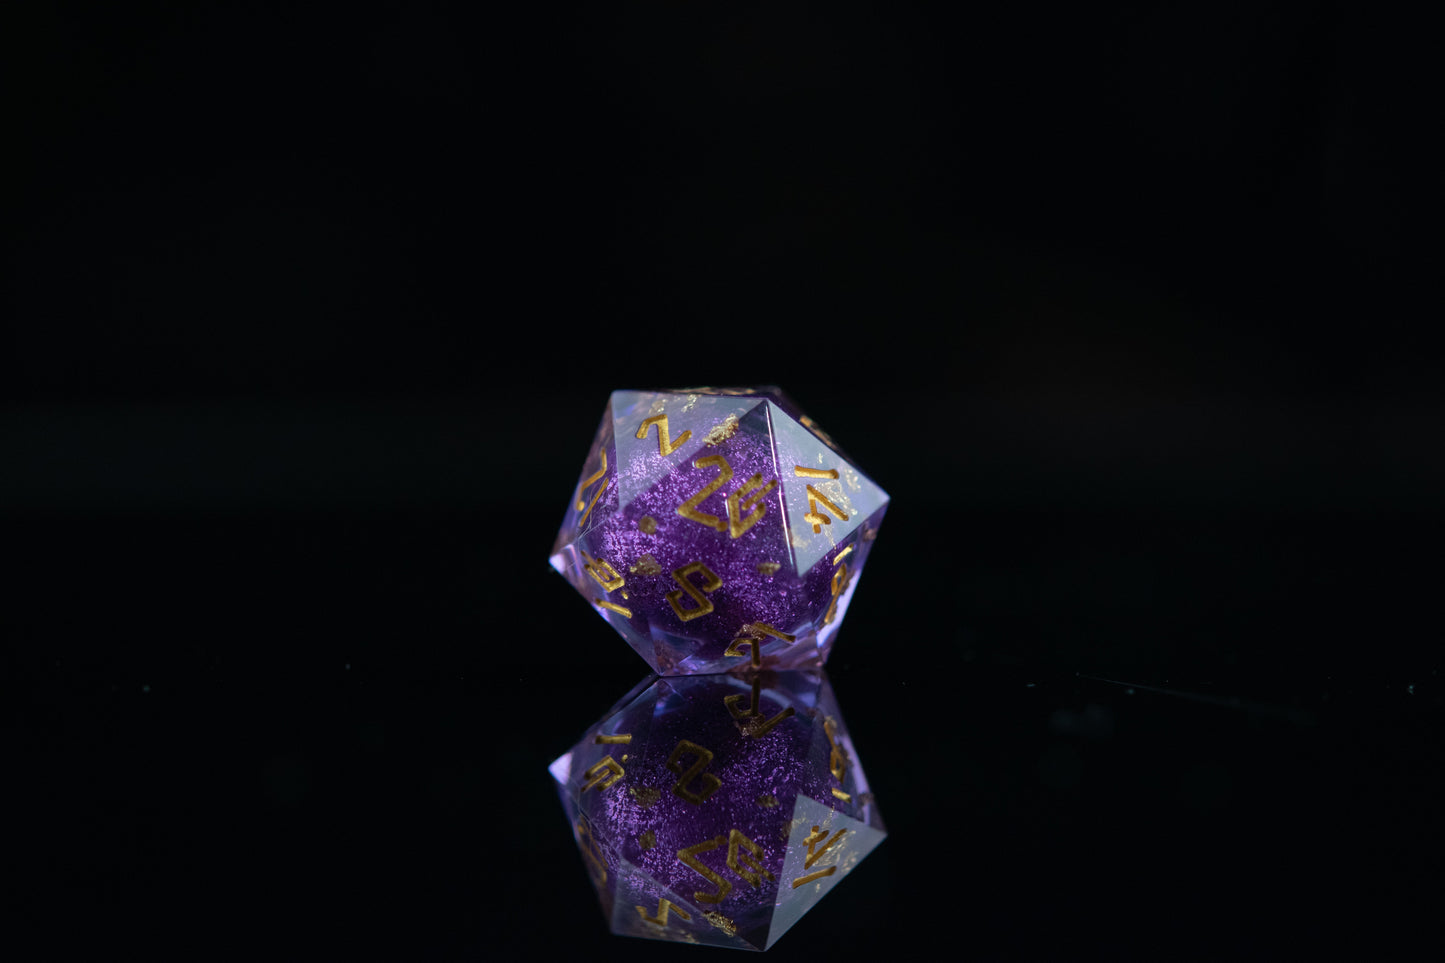 Juego de dados de núcleo líquido de mago púrpura